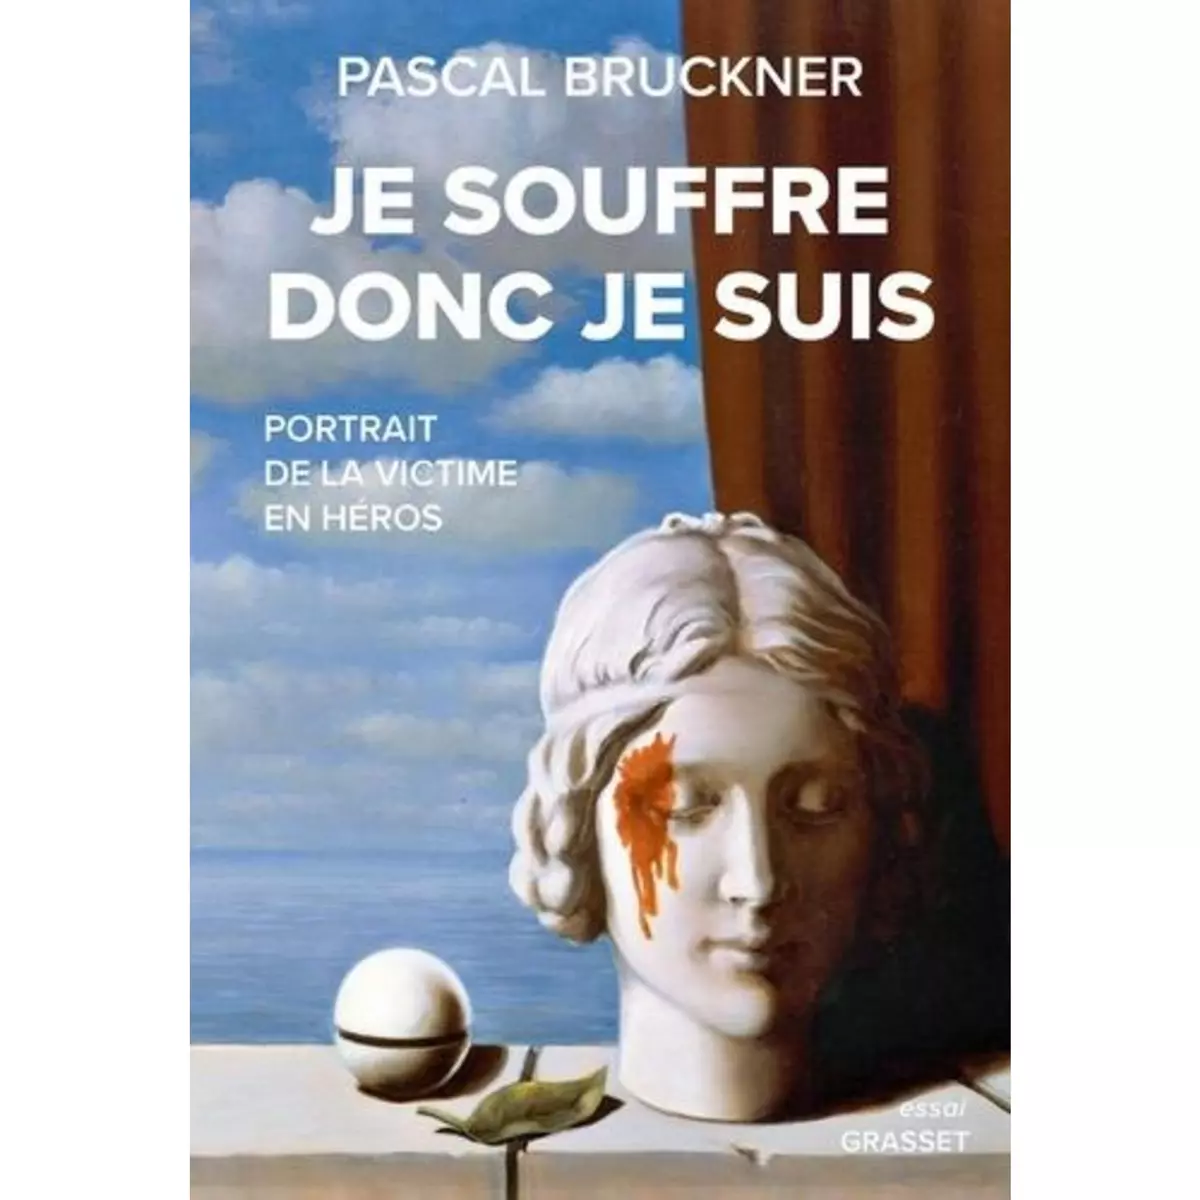  JE SOUFFRE DONC JE SUIS. PORTRAIT DE LA VICTIME EN HEROS, Bruckner Pascal